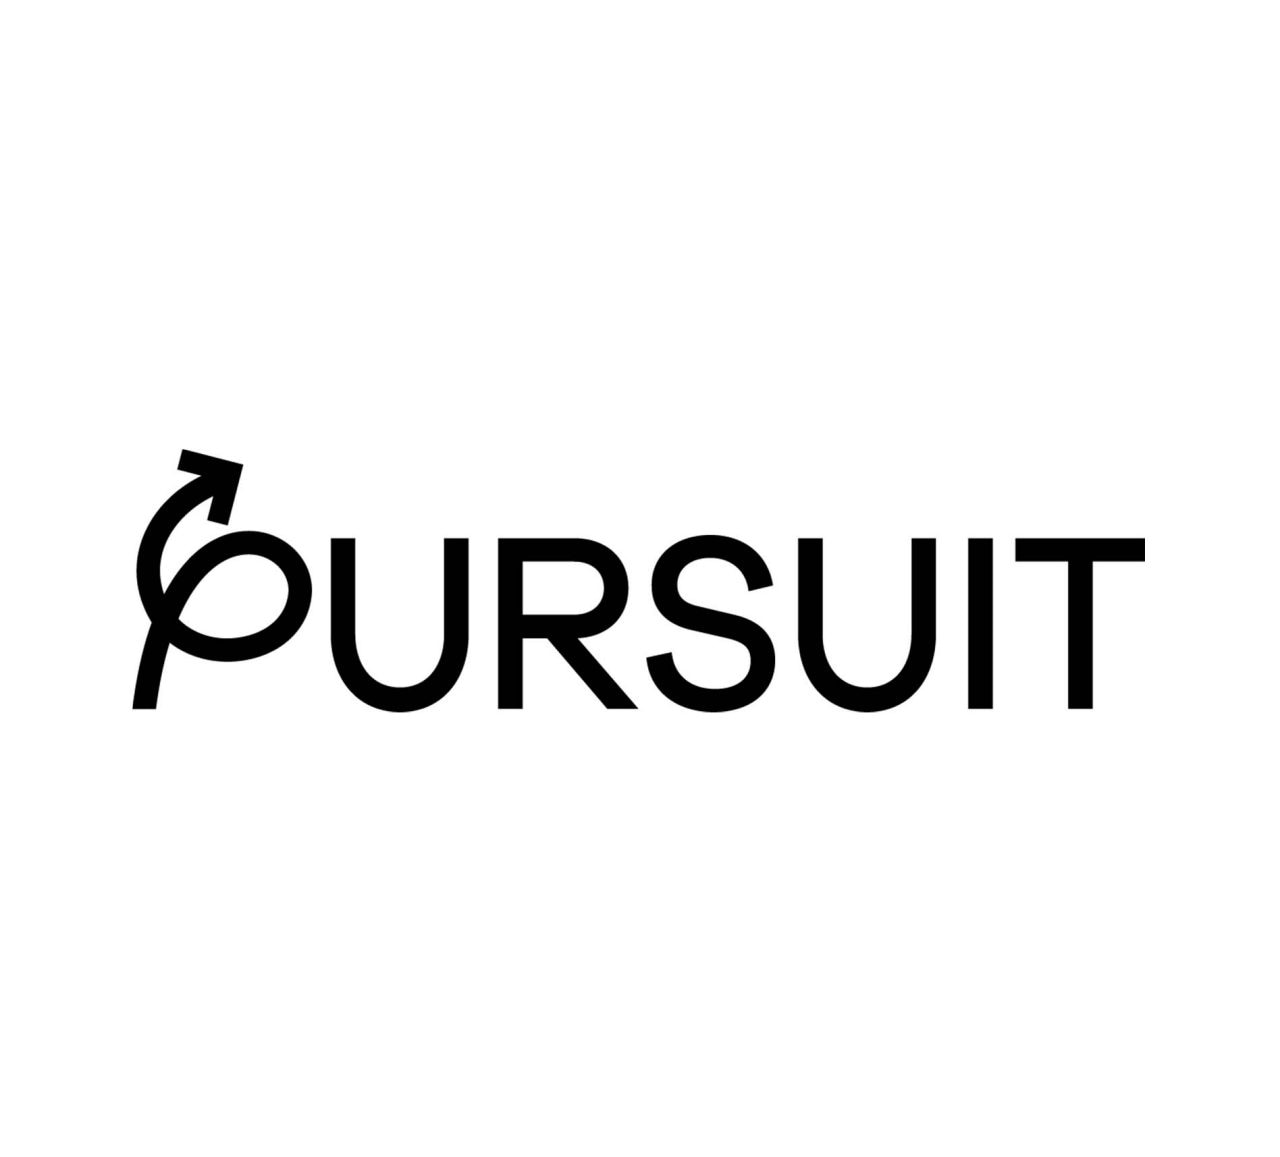 Pursuit logo